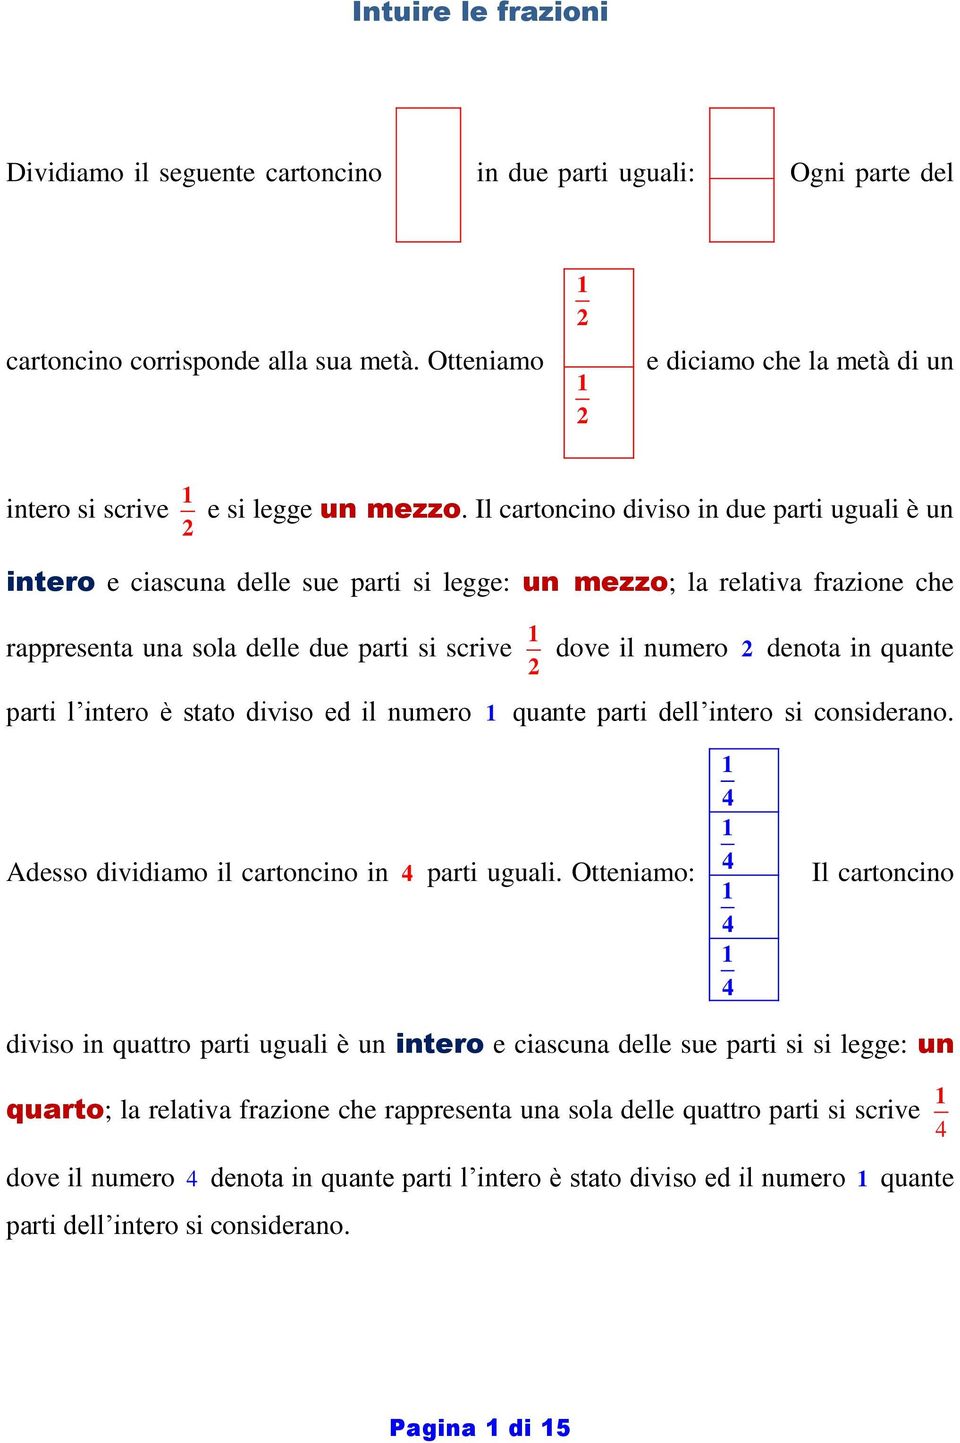 Il cartoncino diviso in due parti uguali è un intero e ciascuna delle sue parti si legge: un mezzo; la relativa frazione che rappresenta una sola delle due parti si scrive dove il numero denota in